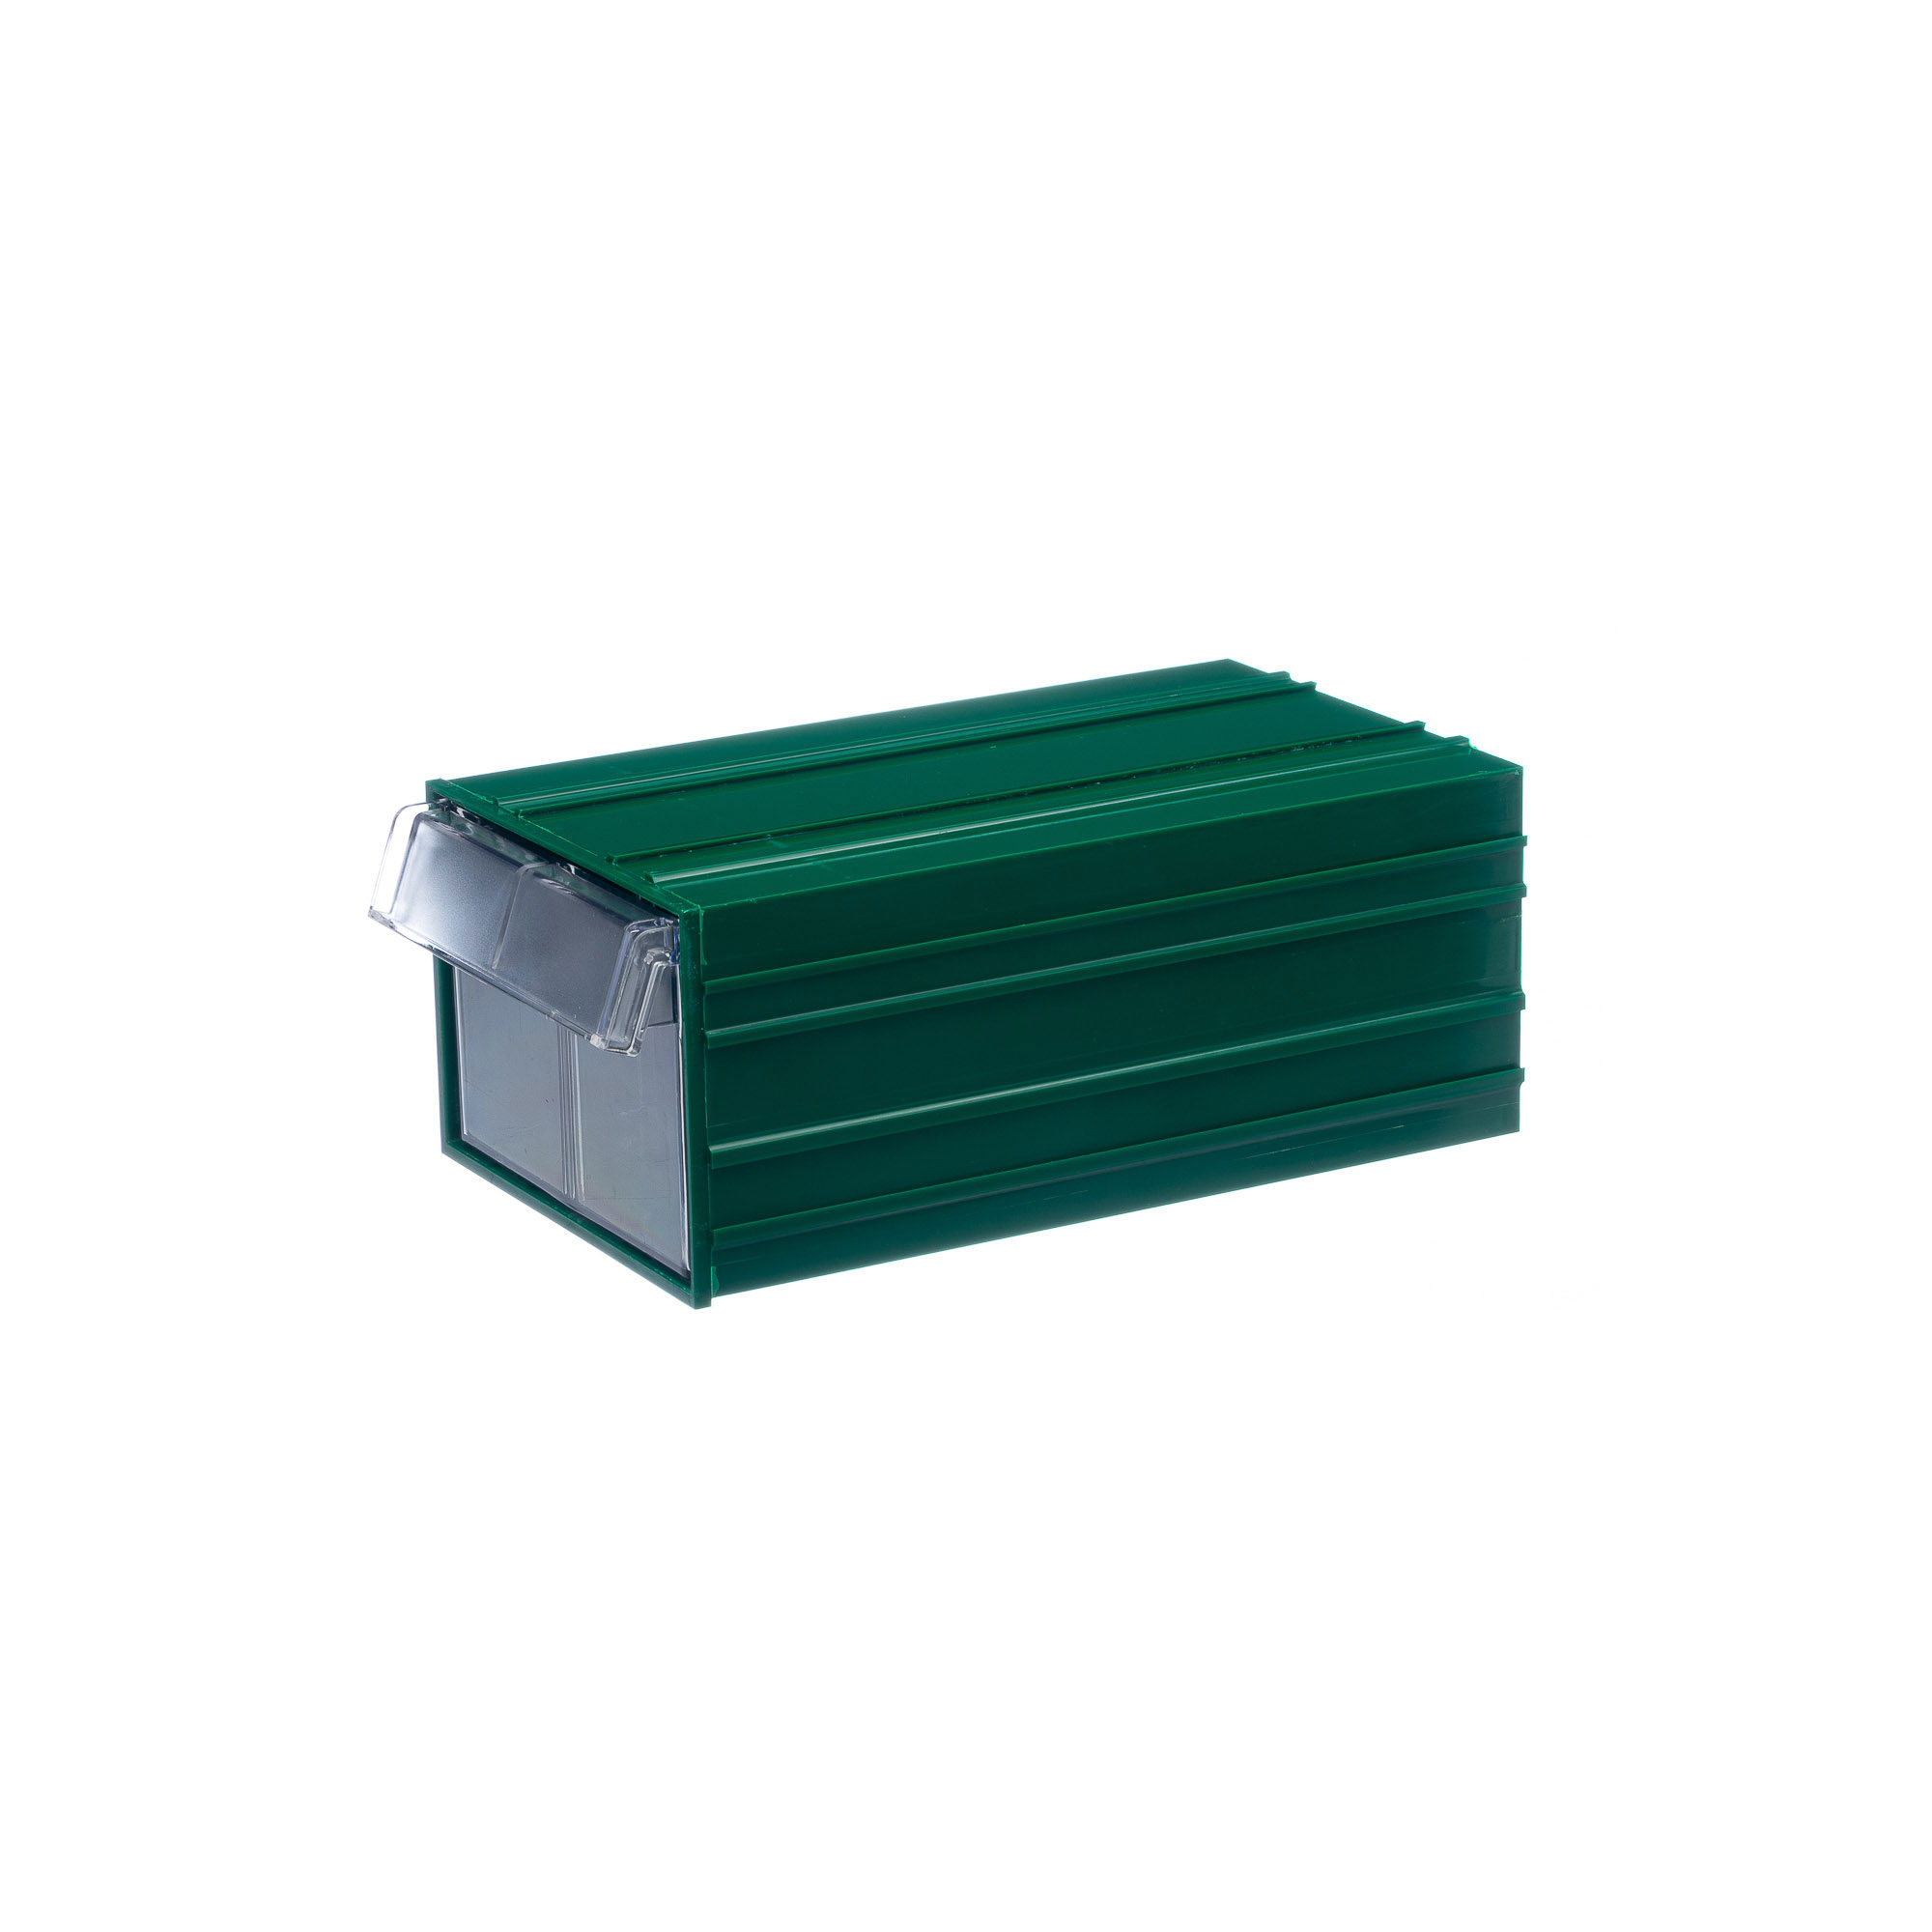 Пластиковый короб Стелла-техник С-2-зеленый-прозрачный 140х250х100мм пластиковый архивный короб attache